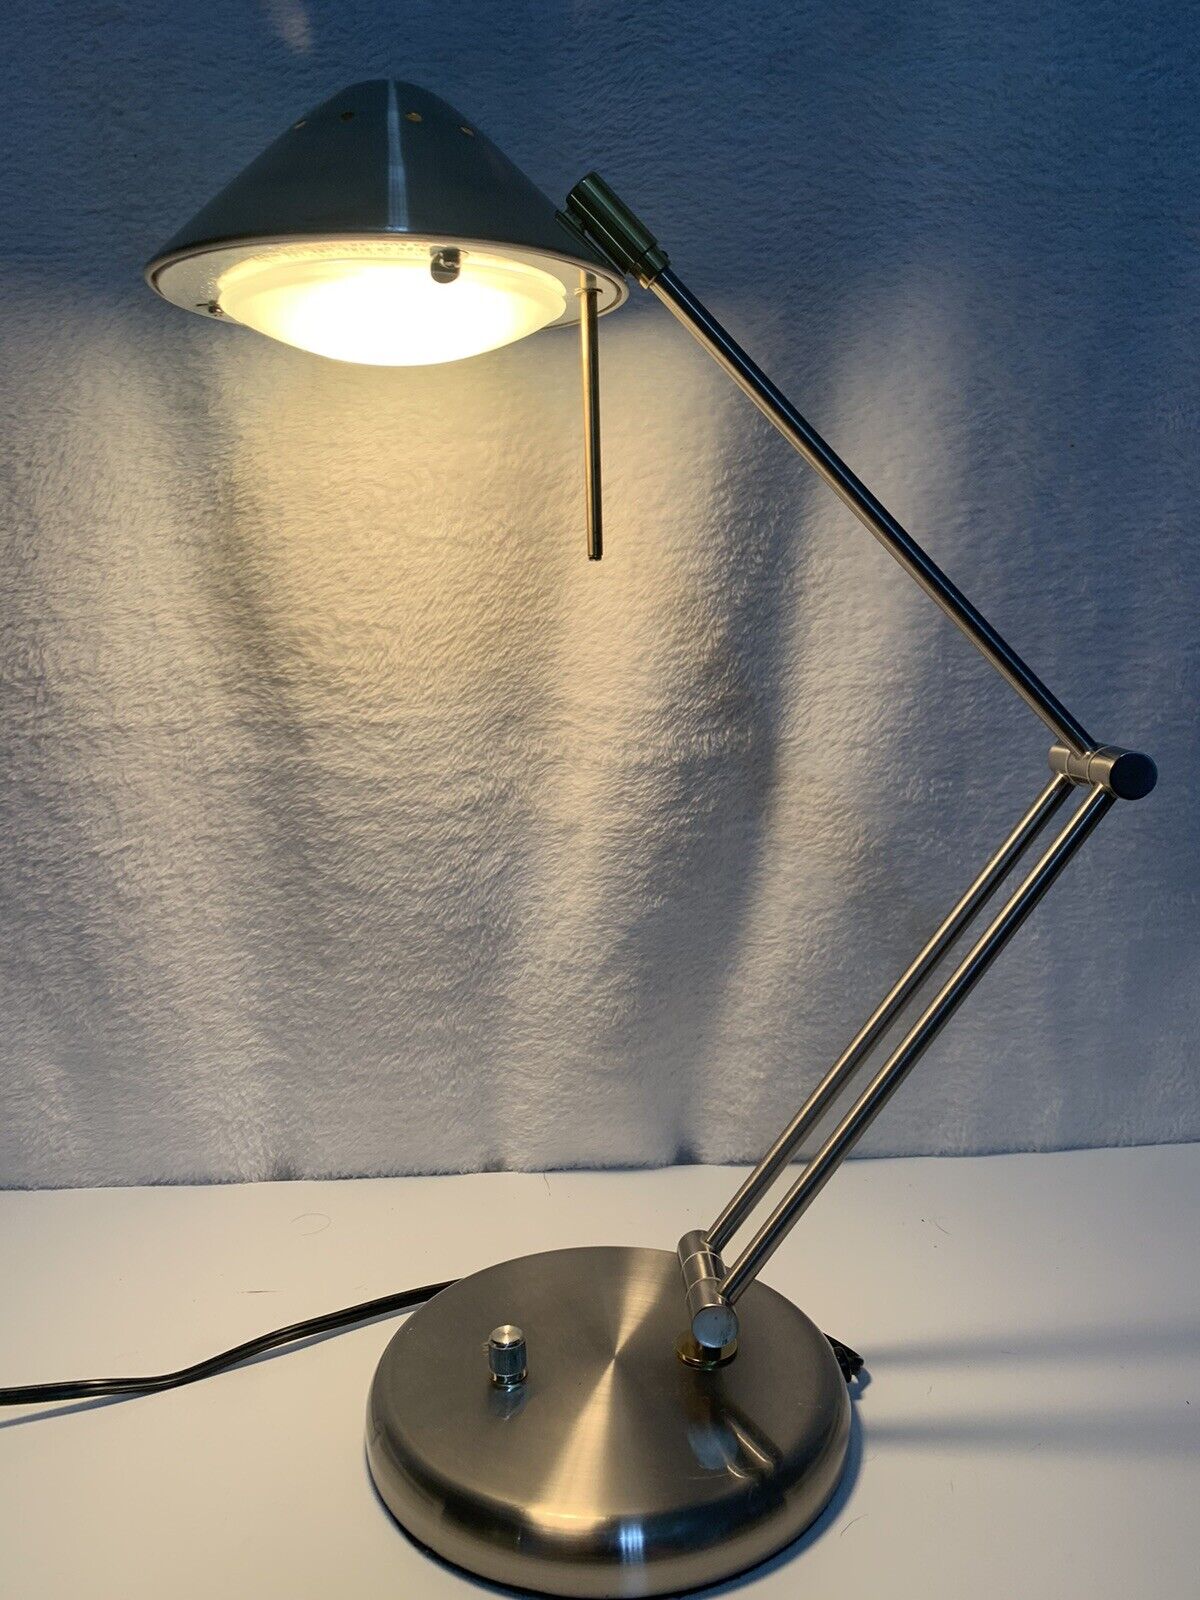 Chrome Lamp Swing Arm Vintage Office Desk Lighting Decor Dimmer Switch